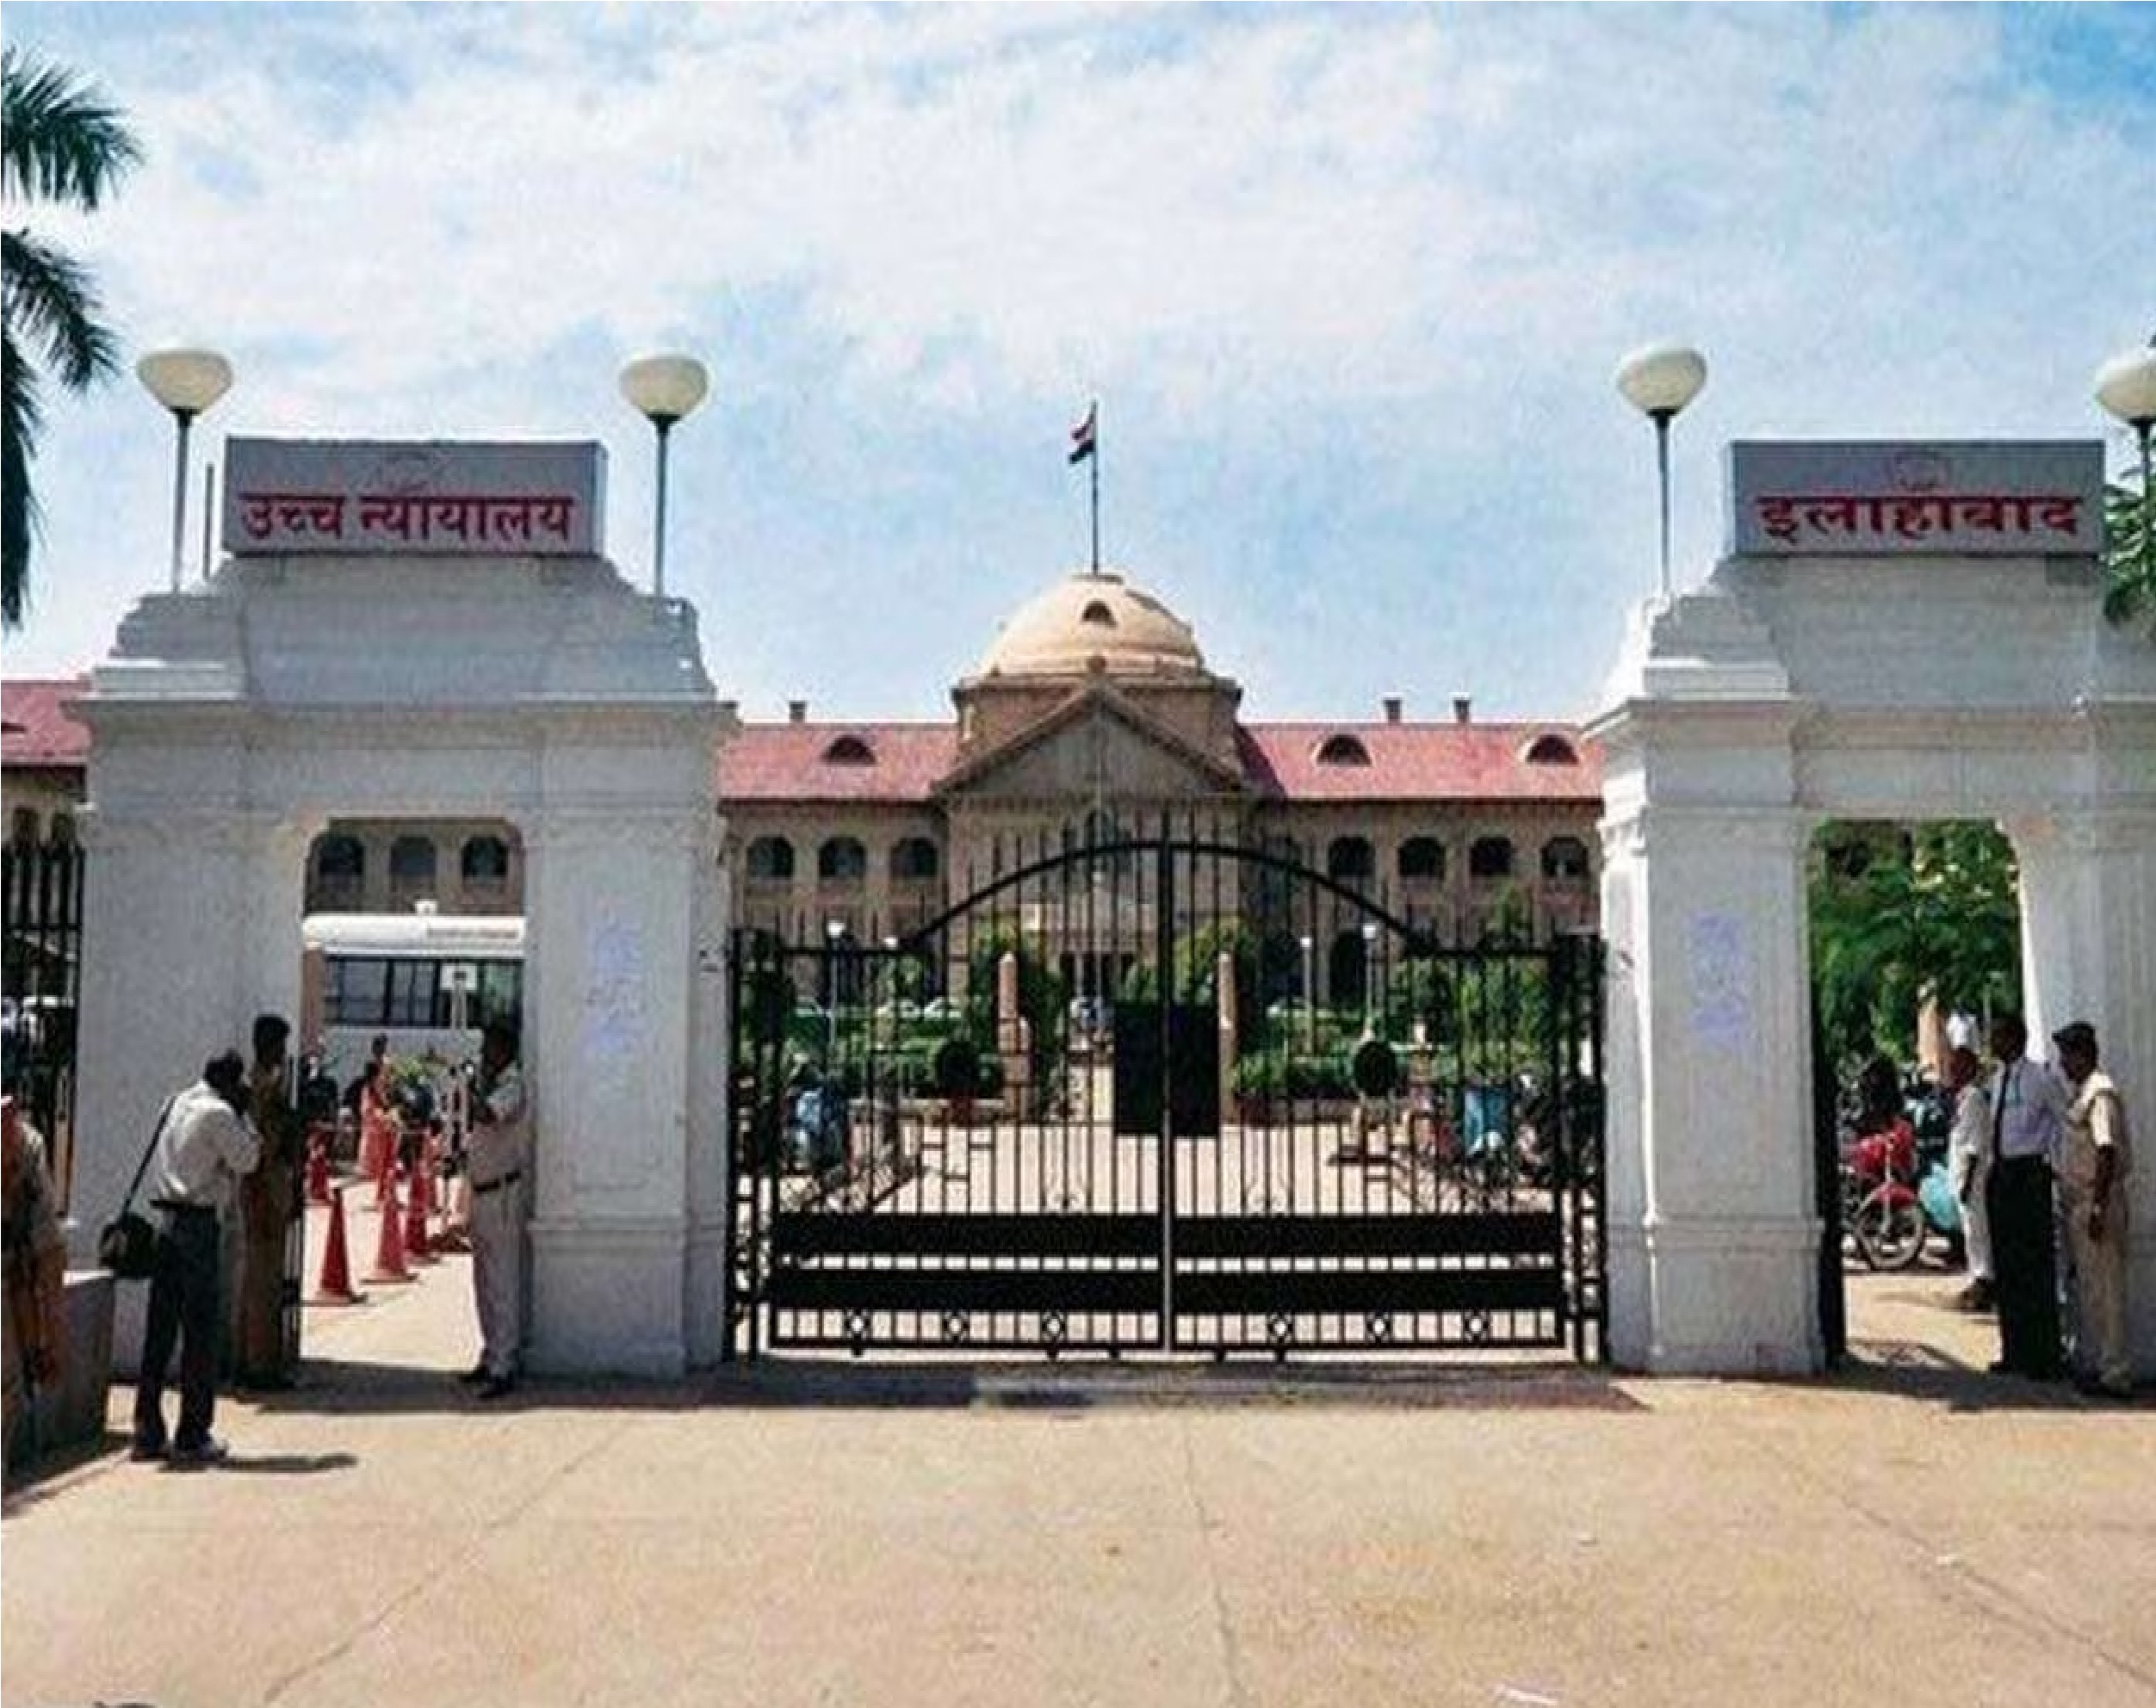 Allahabad High Court: दो अधिवक्ताओं की जिला अदालत में प्रवेश पर रोक लगाई